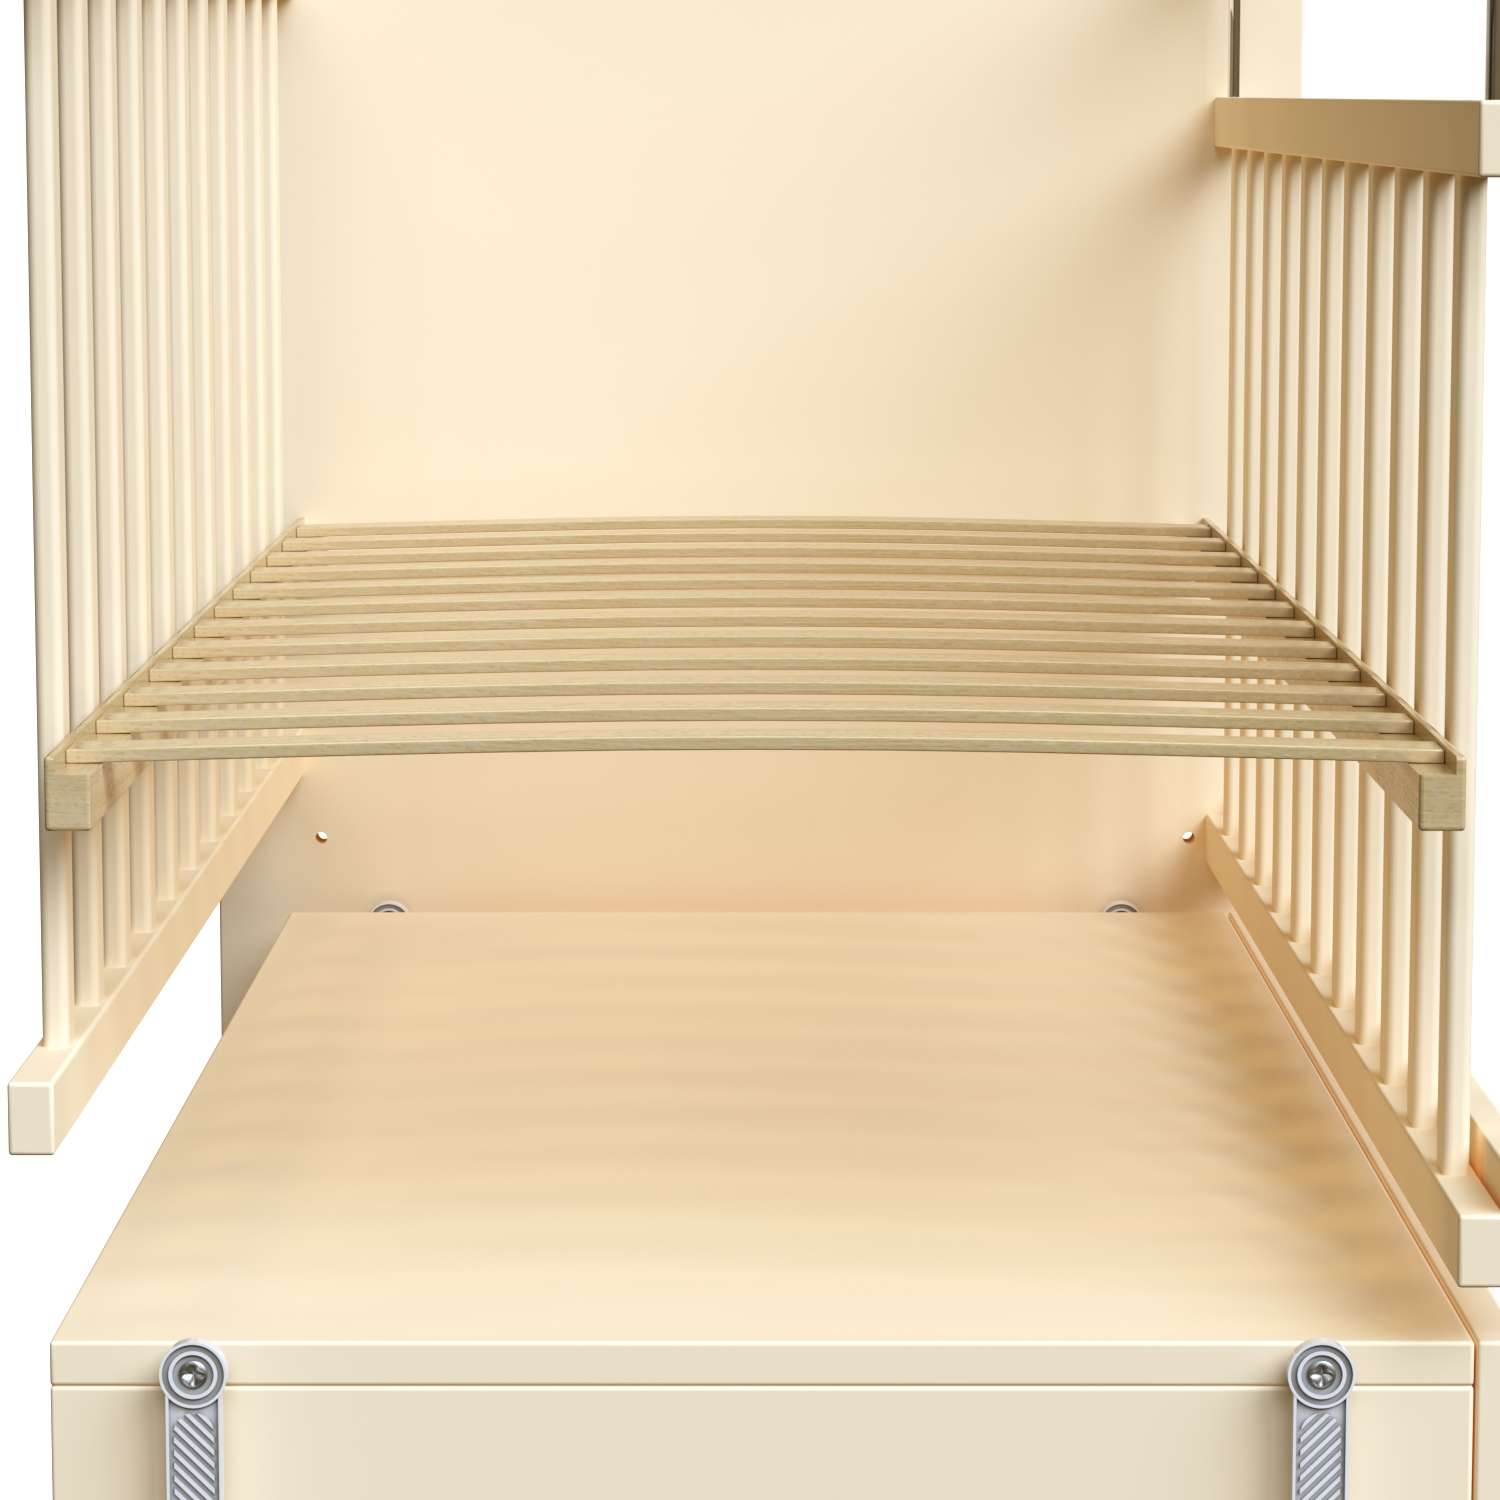 Детская кроватка ВДК Садко прямоугольная, продольный маятник (слоновая кость) - фото 5